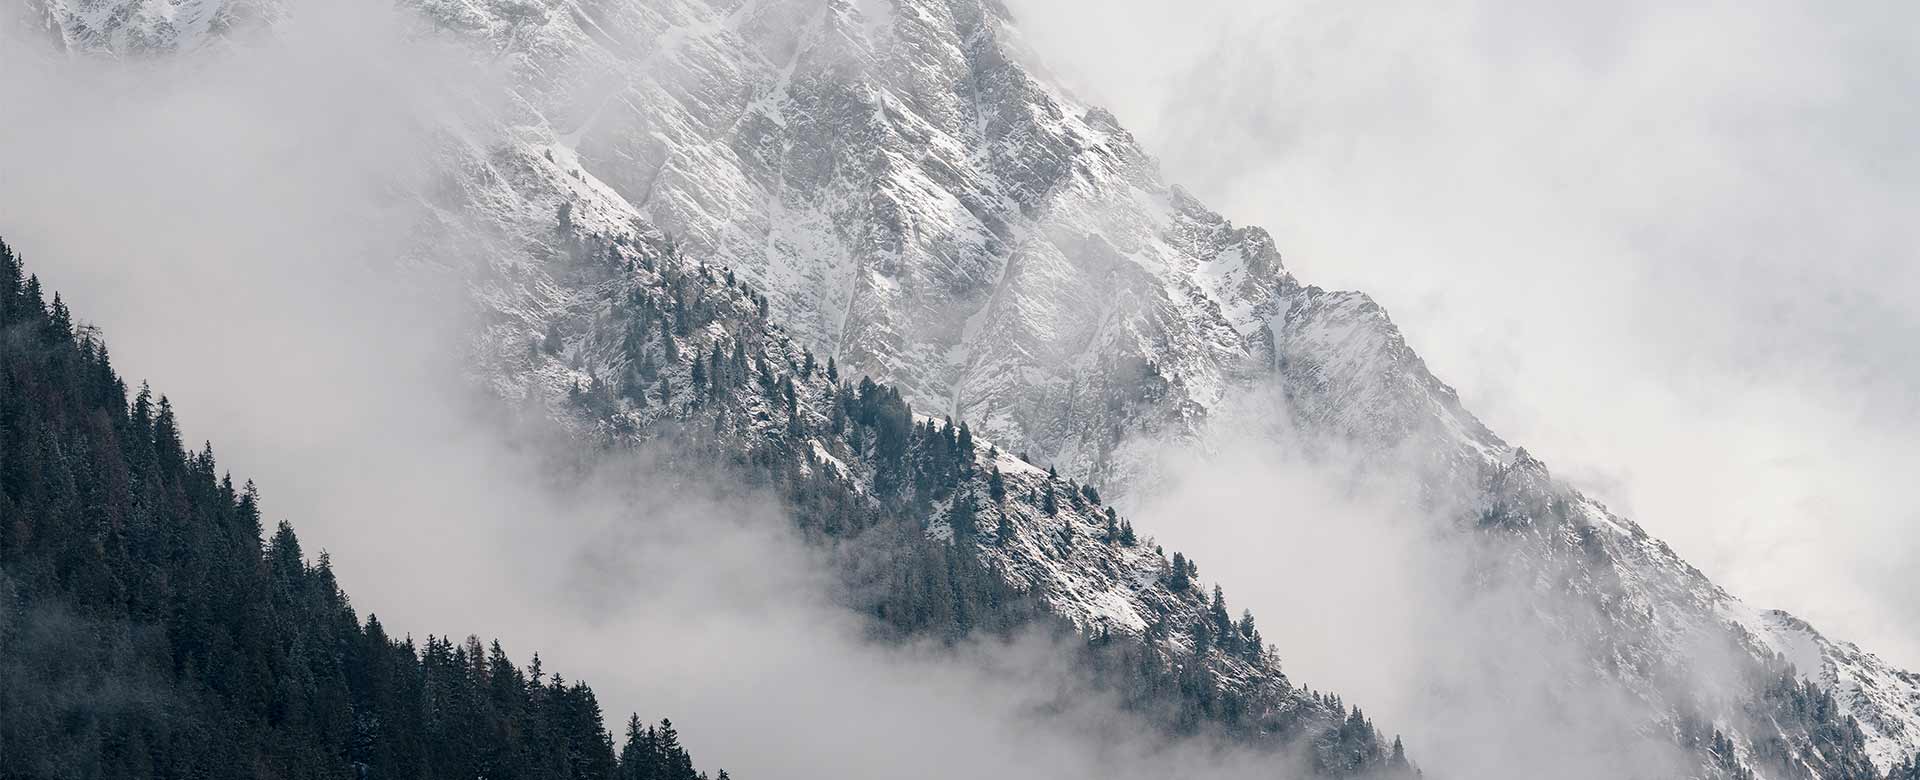  In apertura, le montagne della Valle di Ante © Josef Plaickner